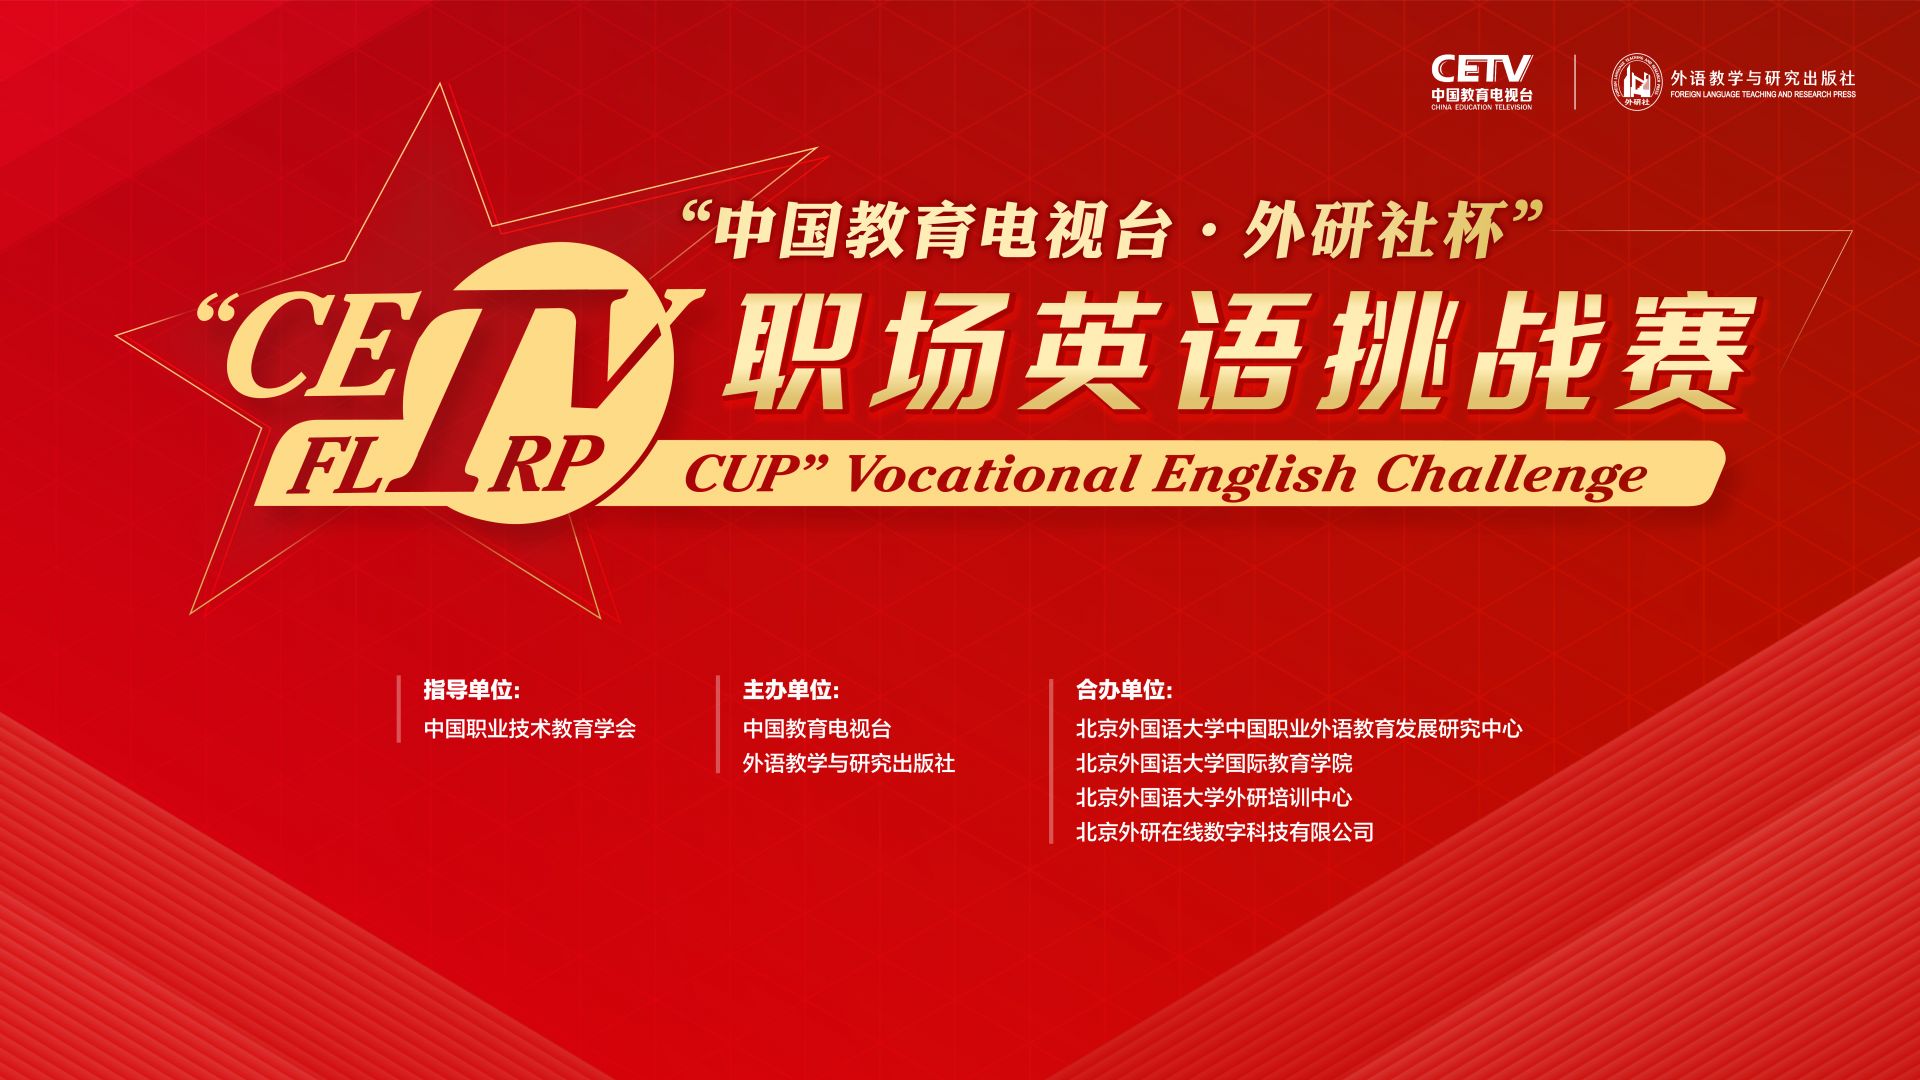 中国教育电视台·外研社杯 职场英语挑战赛